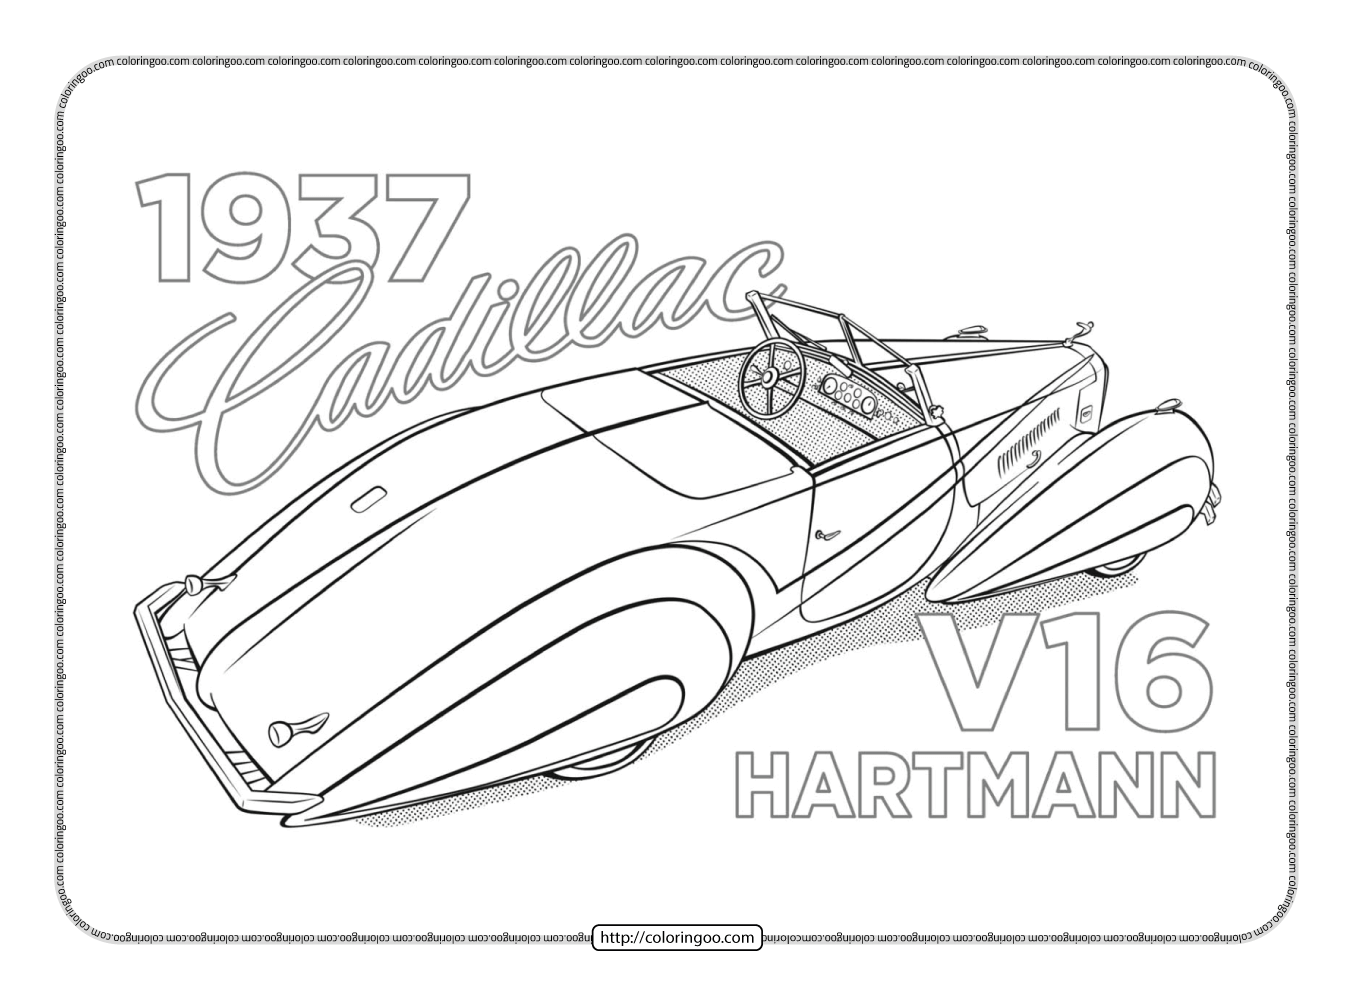 1937 cadillac v16 hartmann coloring page